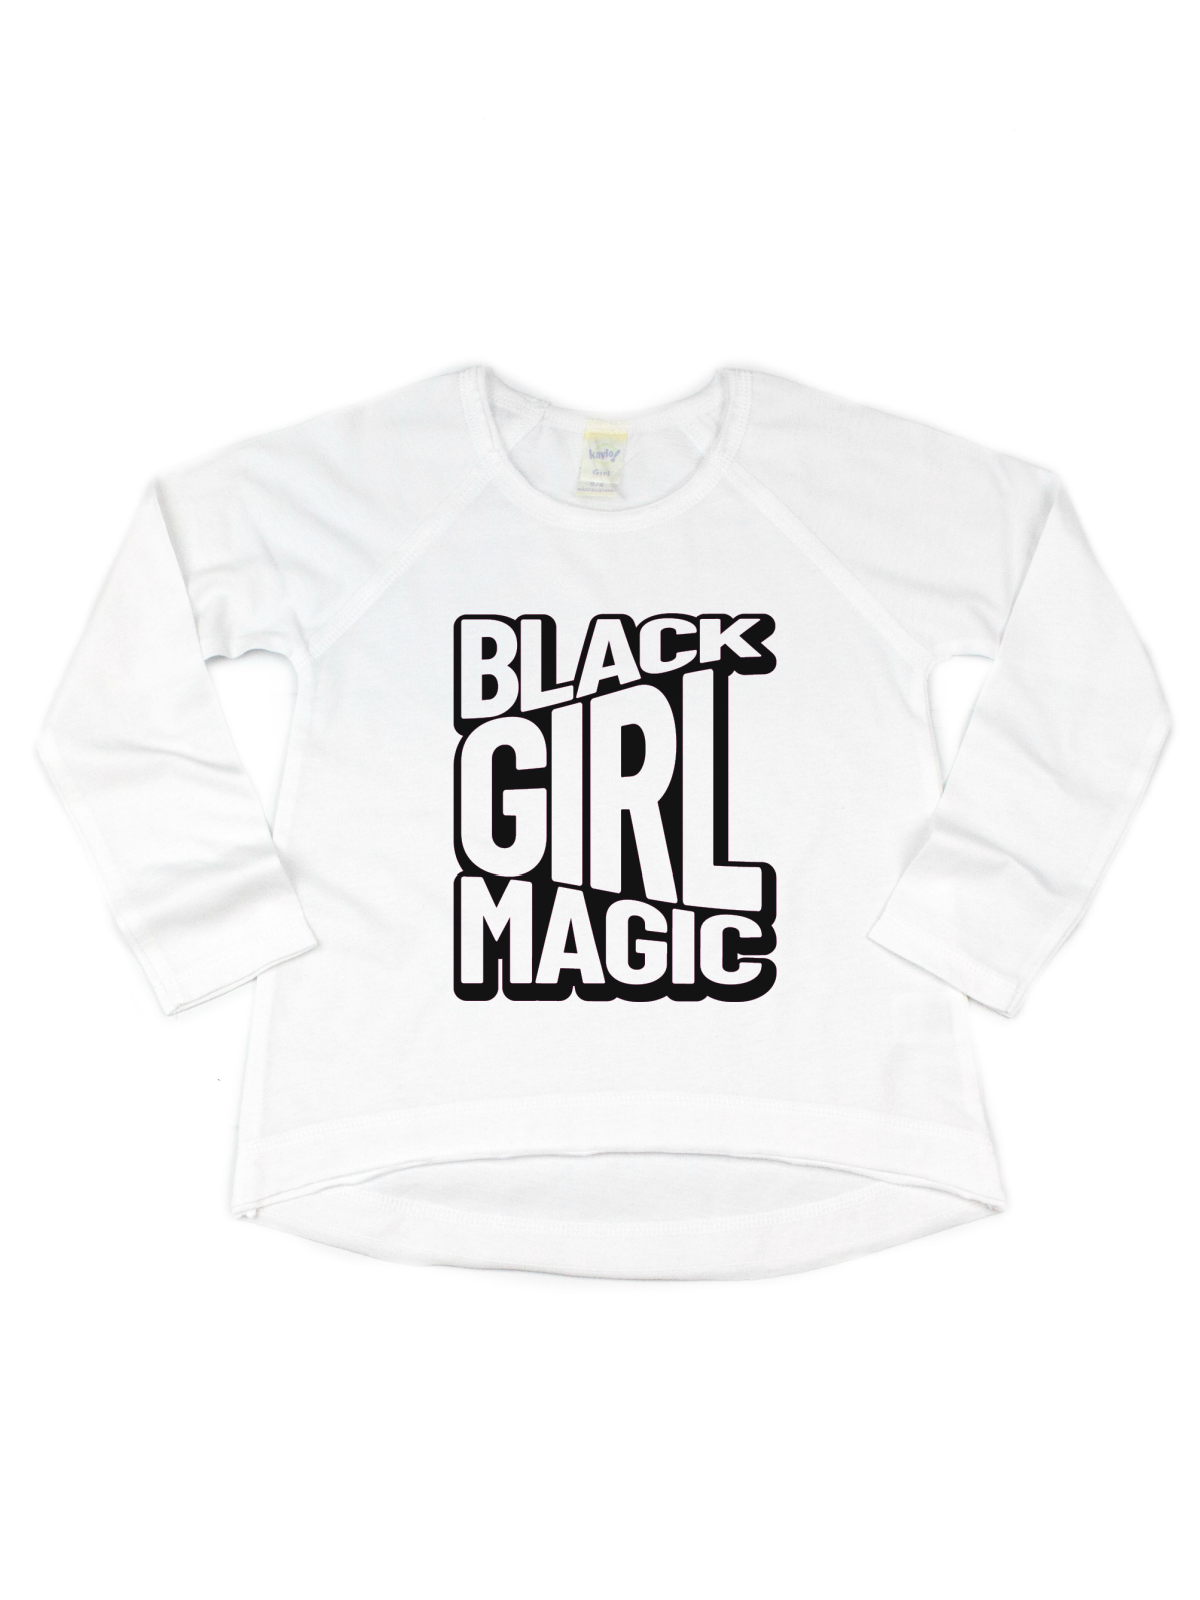 Black Girl Magic Shirt for Girls